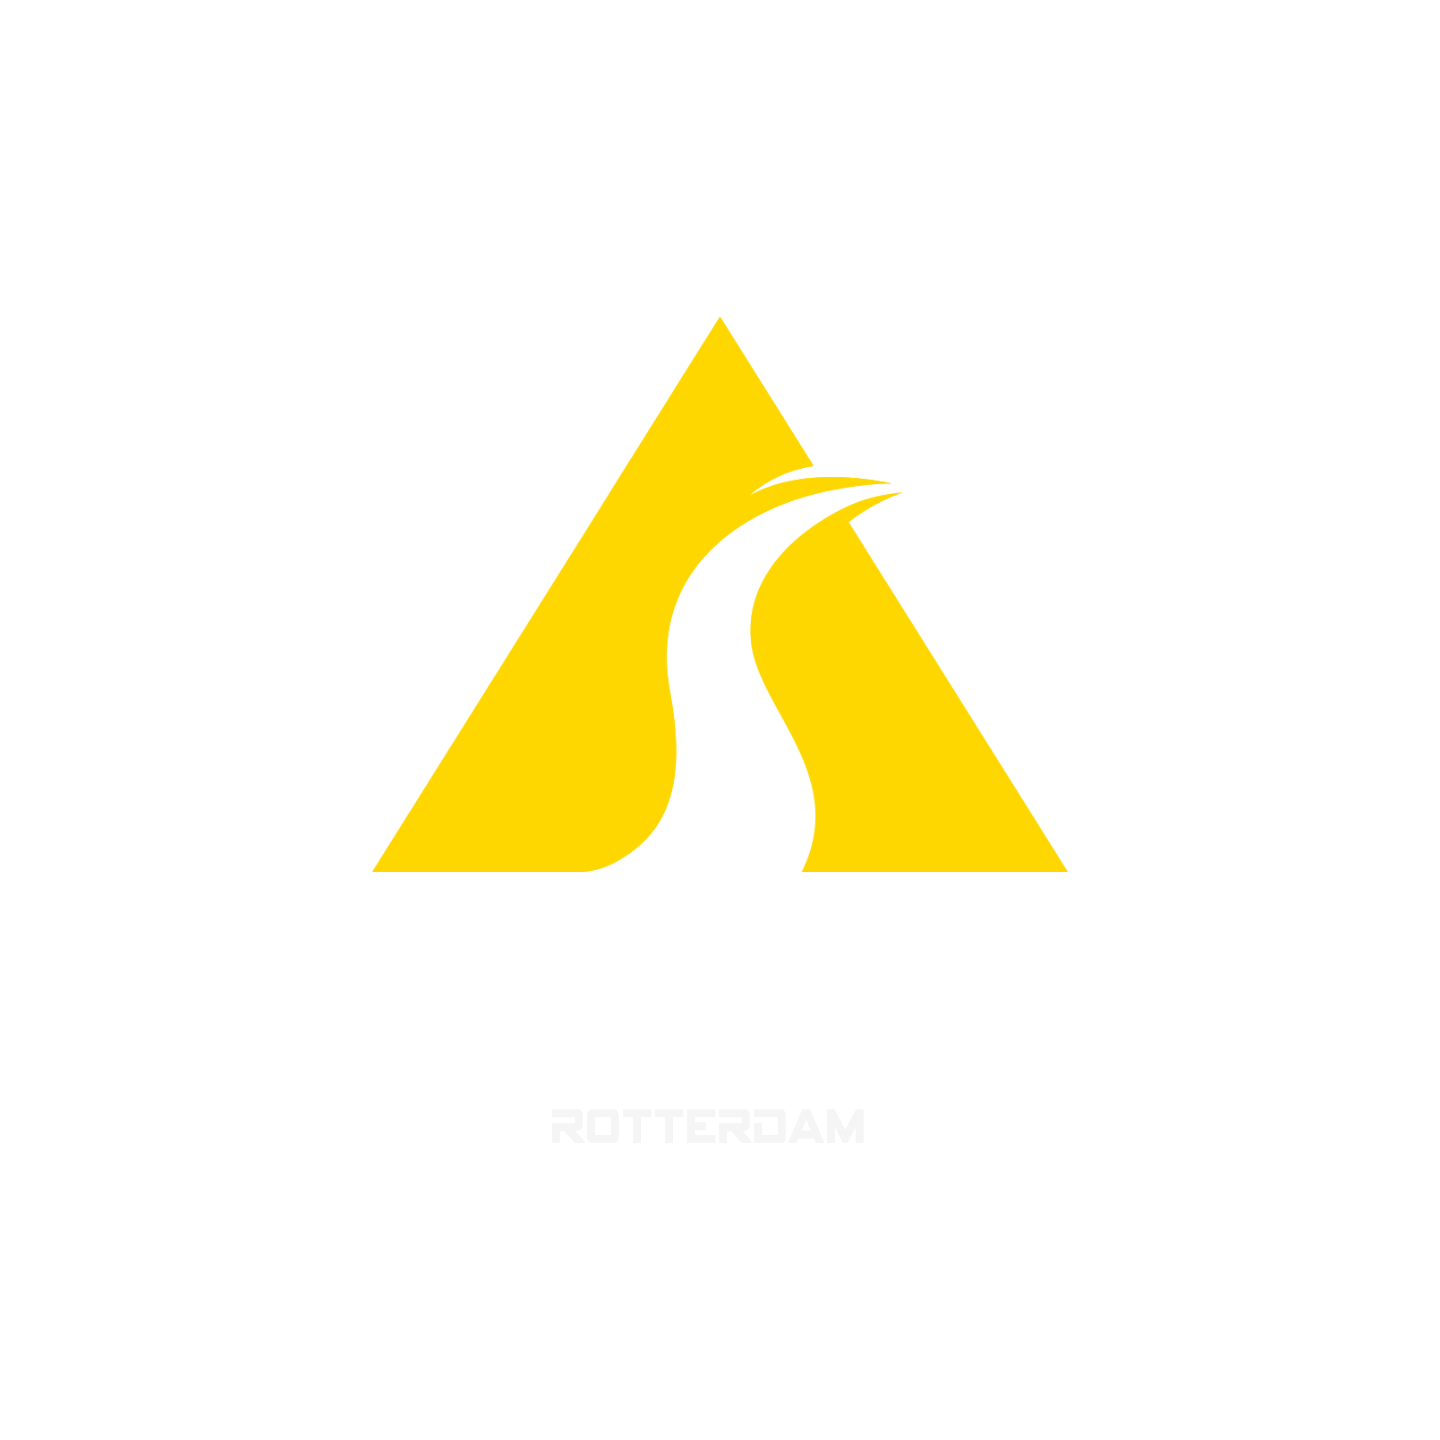 Delta Taxi Rotterdam – Snel en veilig naar jouw bestemming